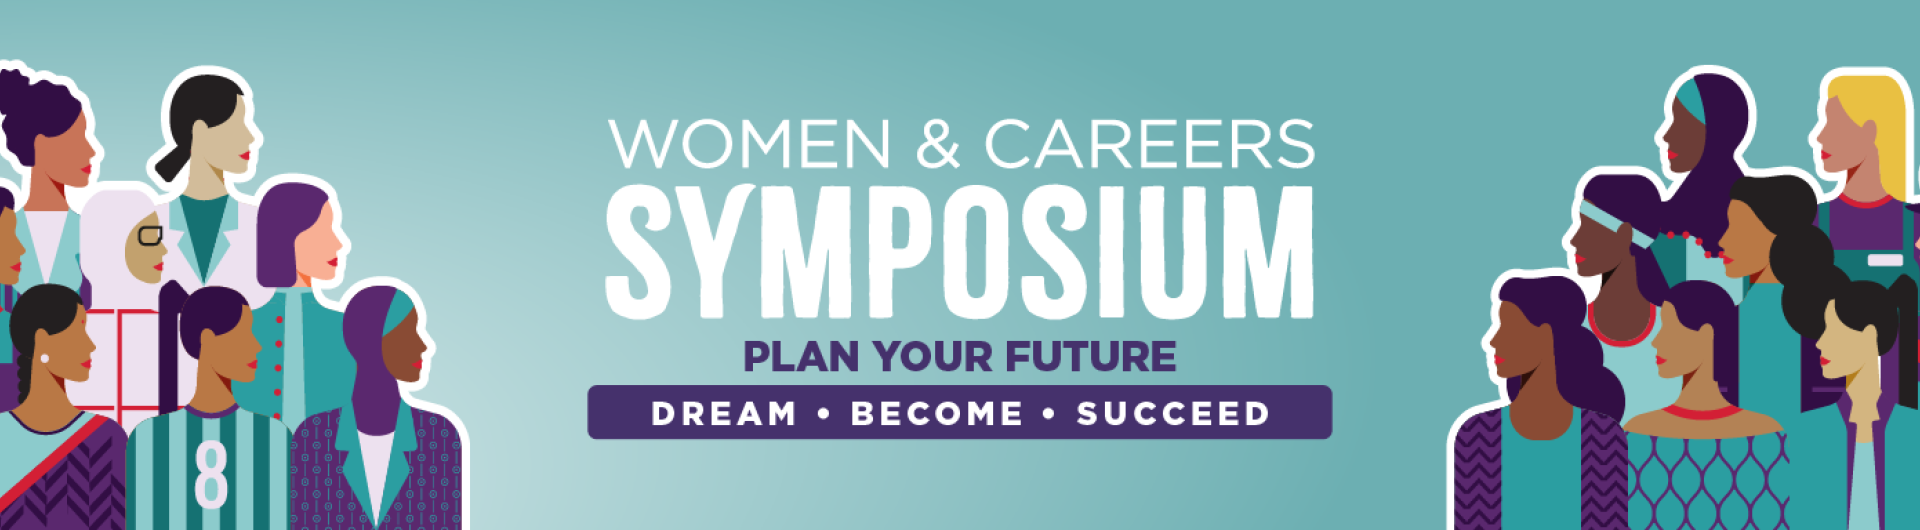 Women & Careers Symposium